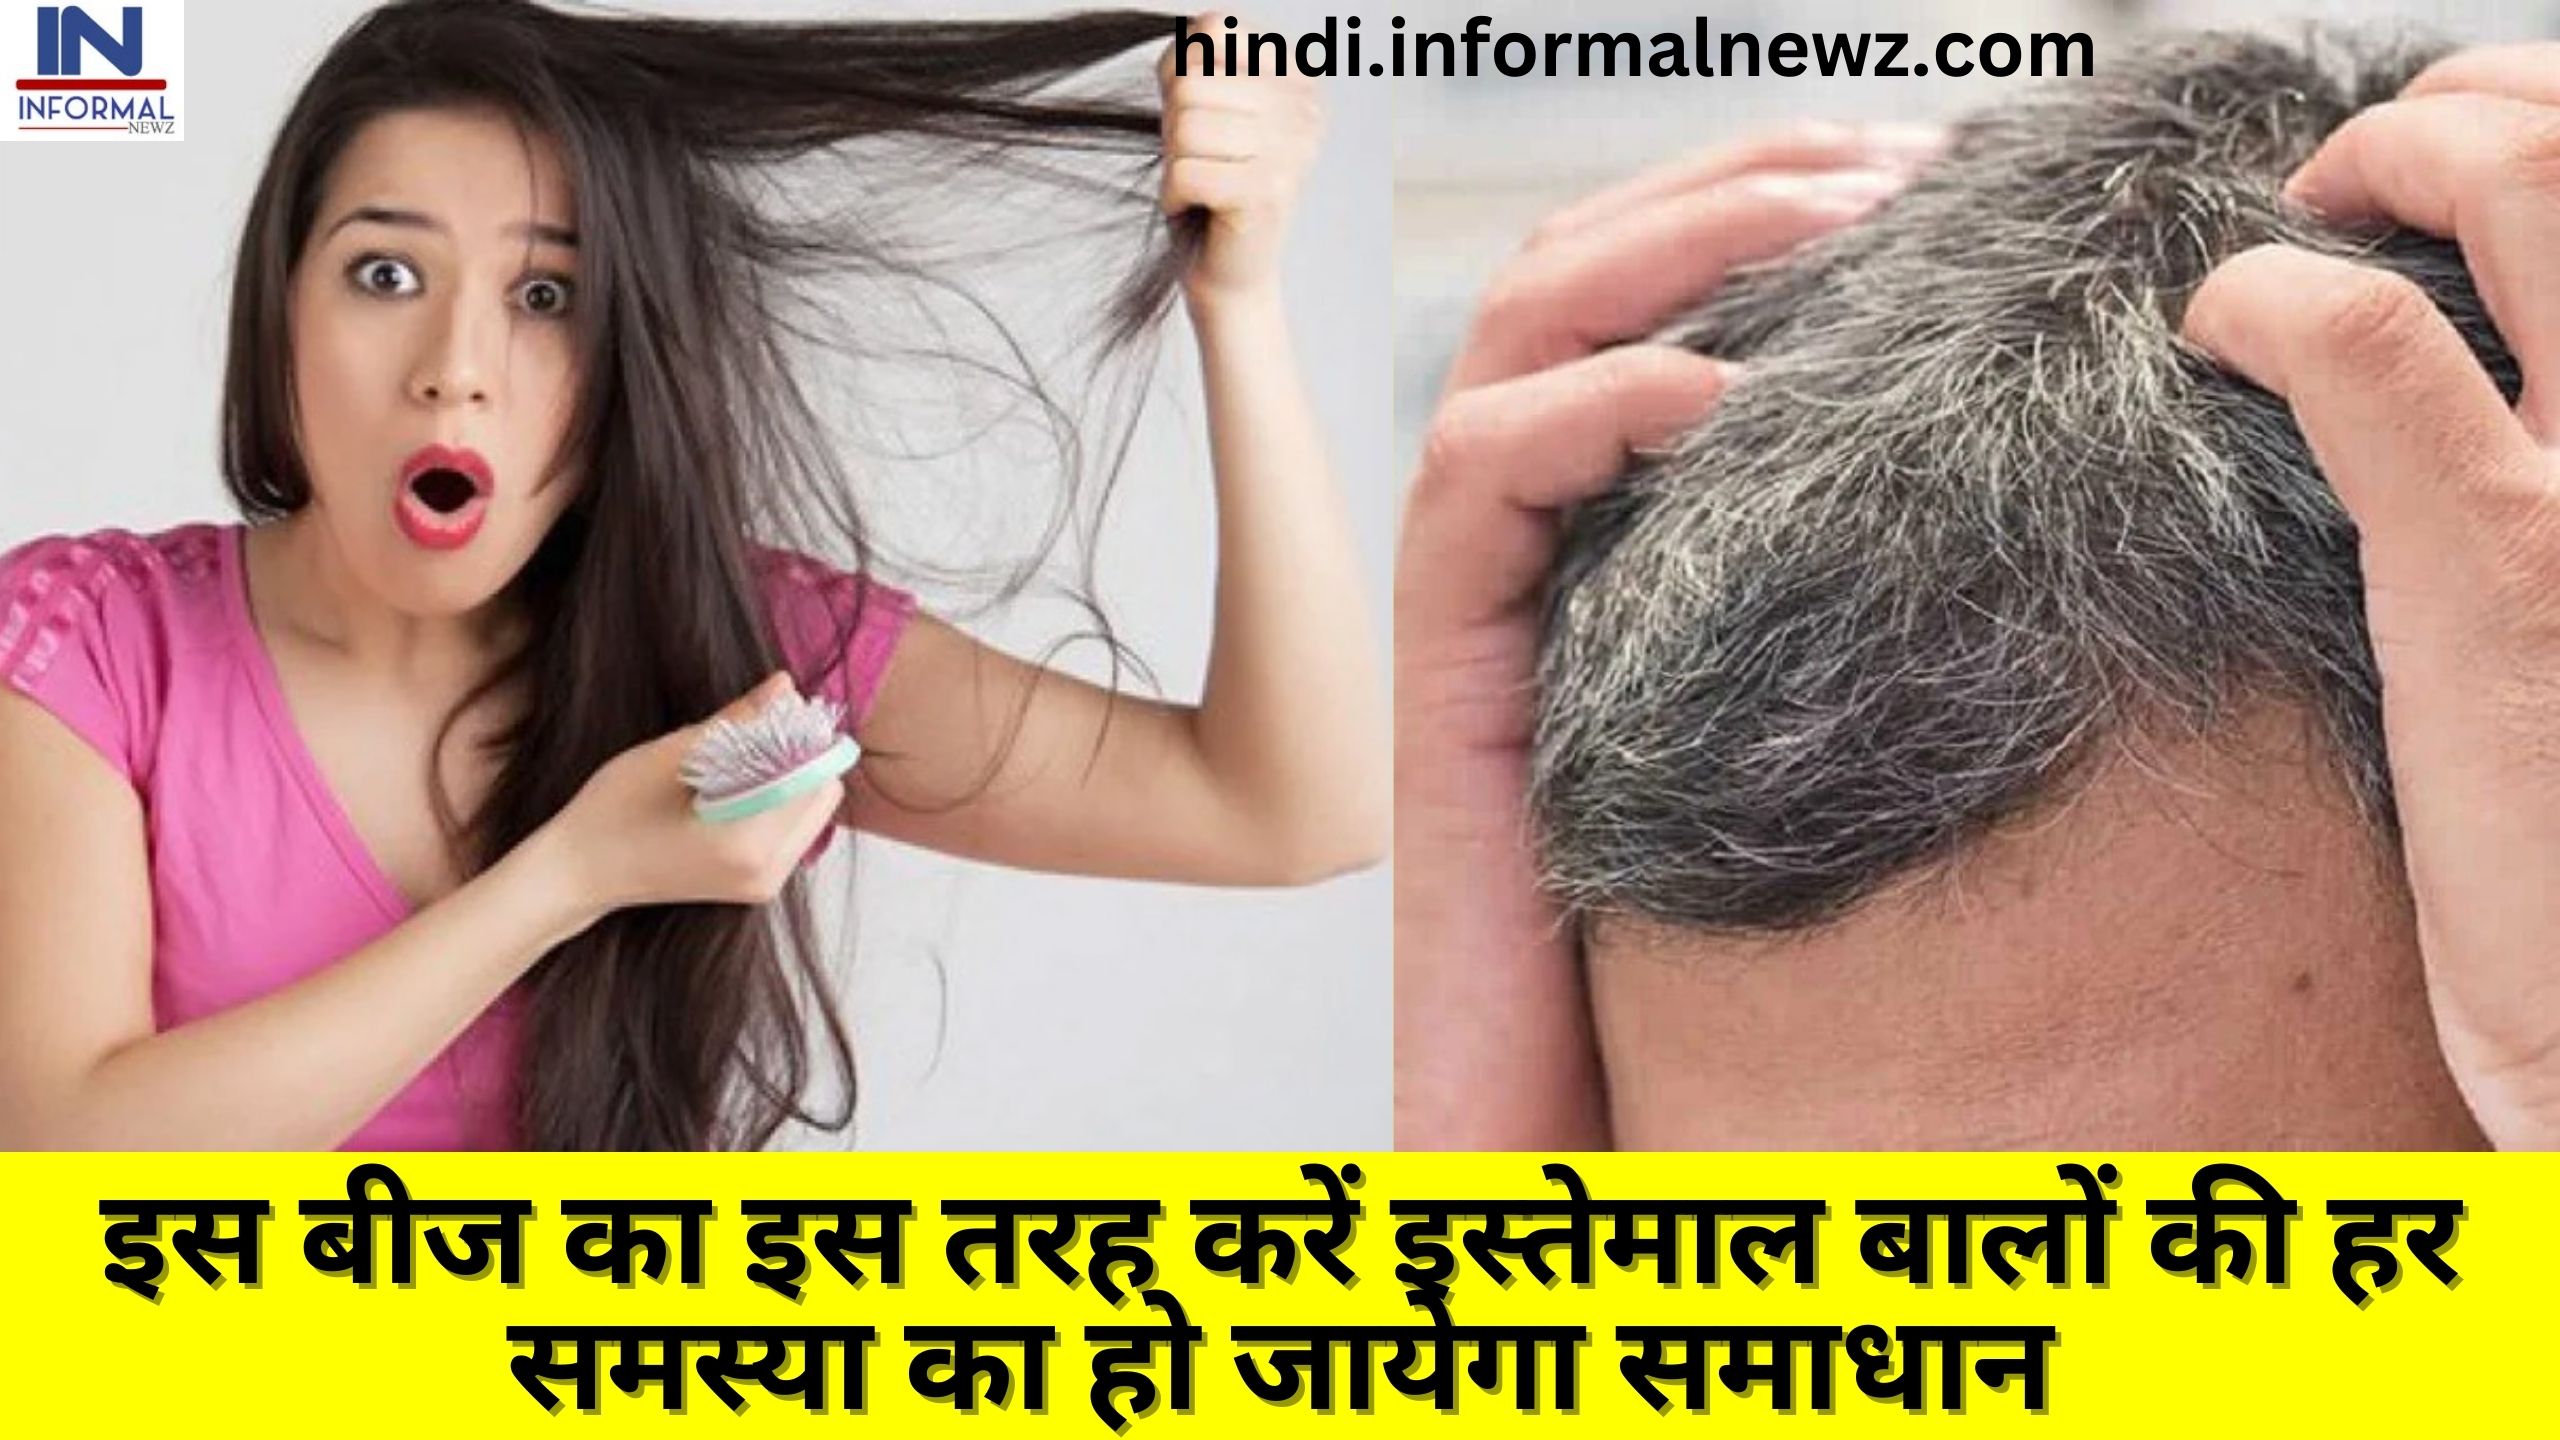 बालों को लंबा और घना करने के उपाय, टिप्स और तरीका - Hair Growth Tips,  Remedy, Precautions and Method in Hindi